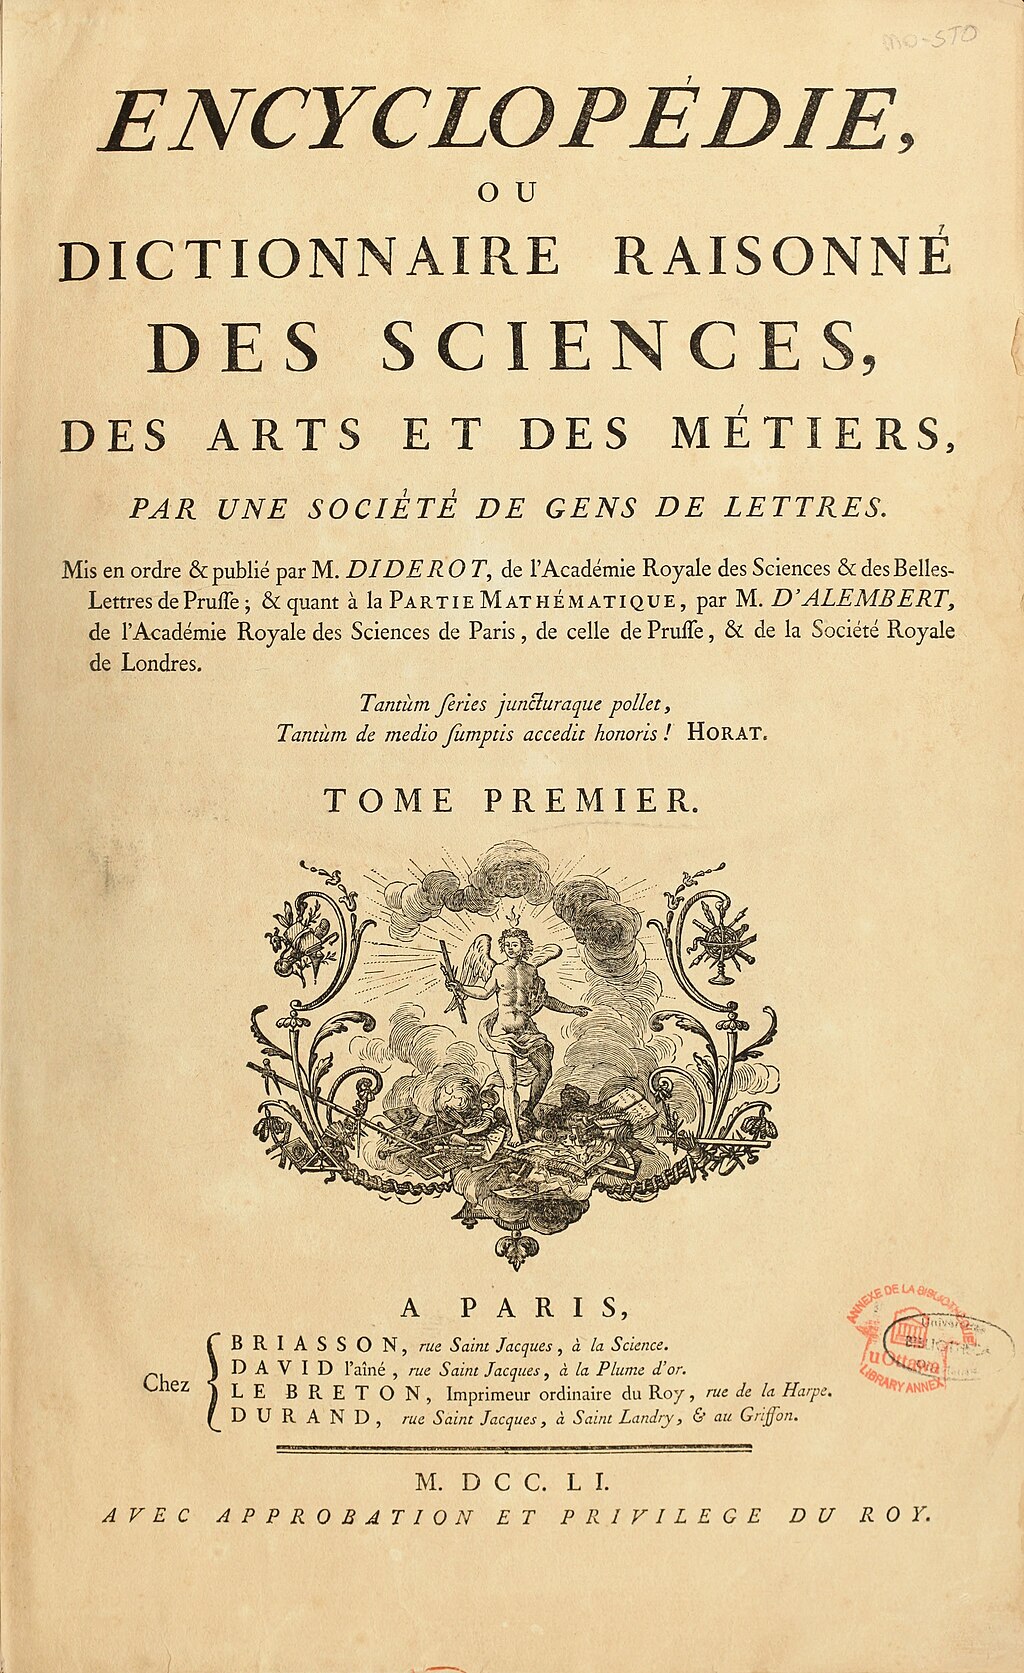 Portada de la Enciclopedia, publicada en 1773.